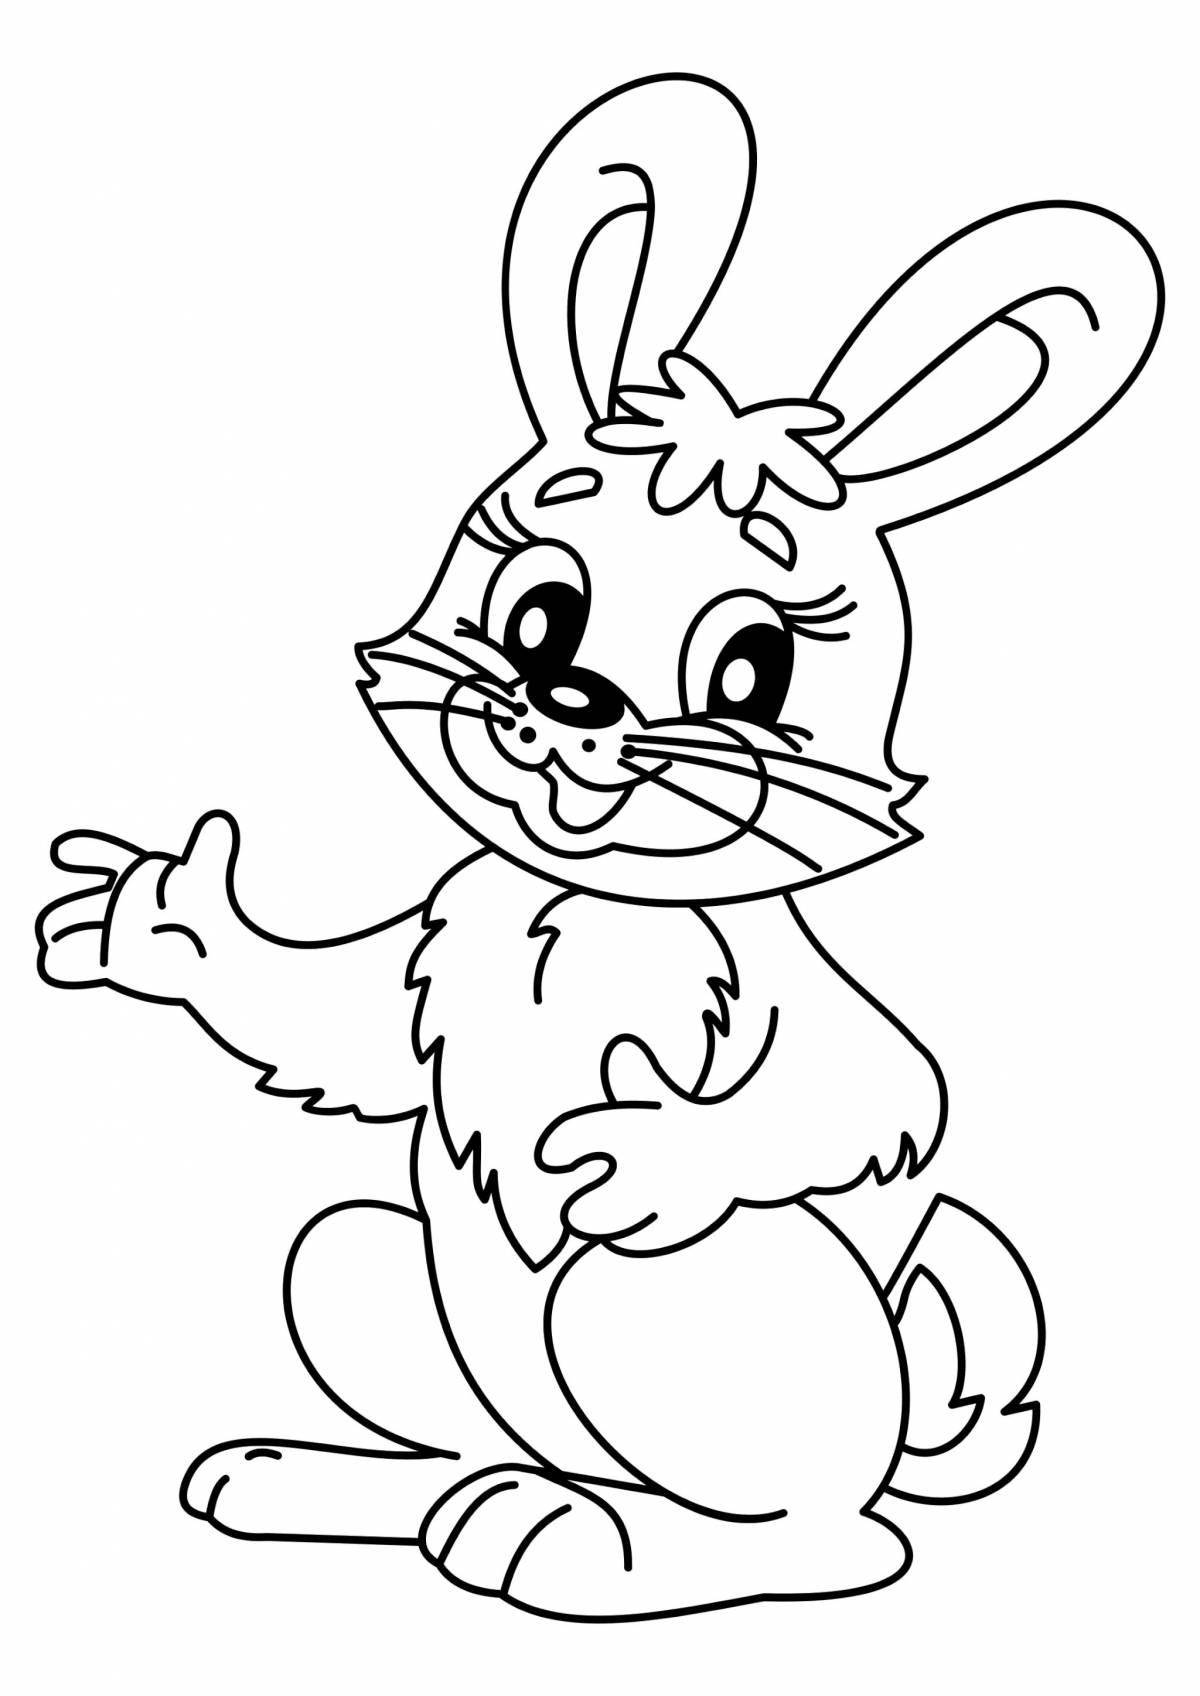 Увлекательный рисунок кролика для детей